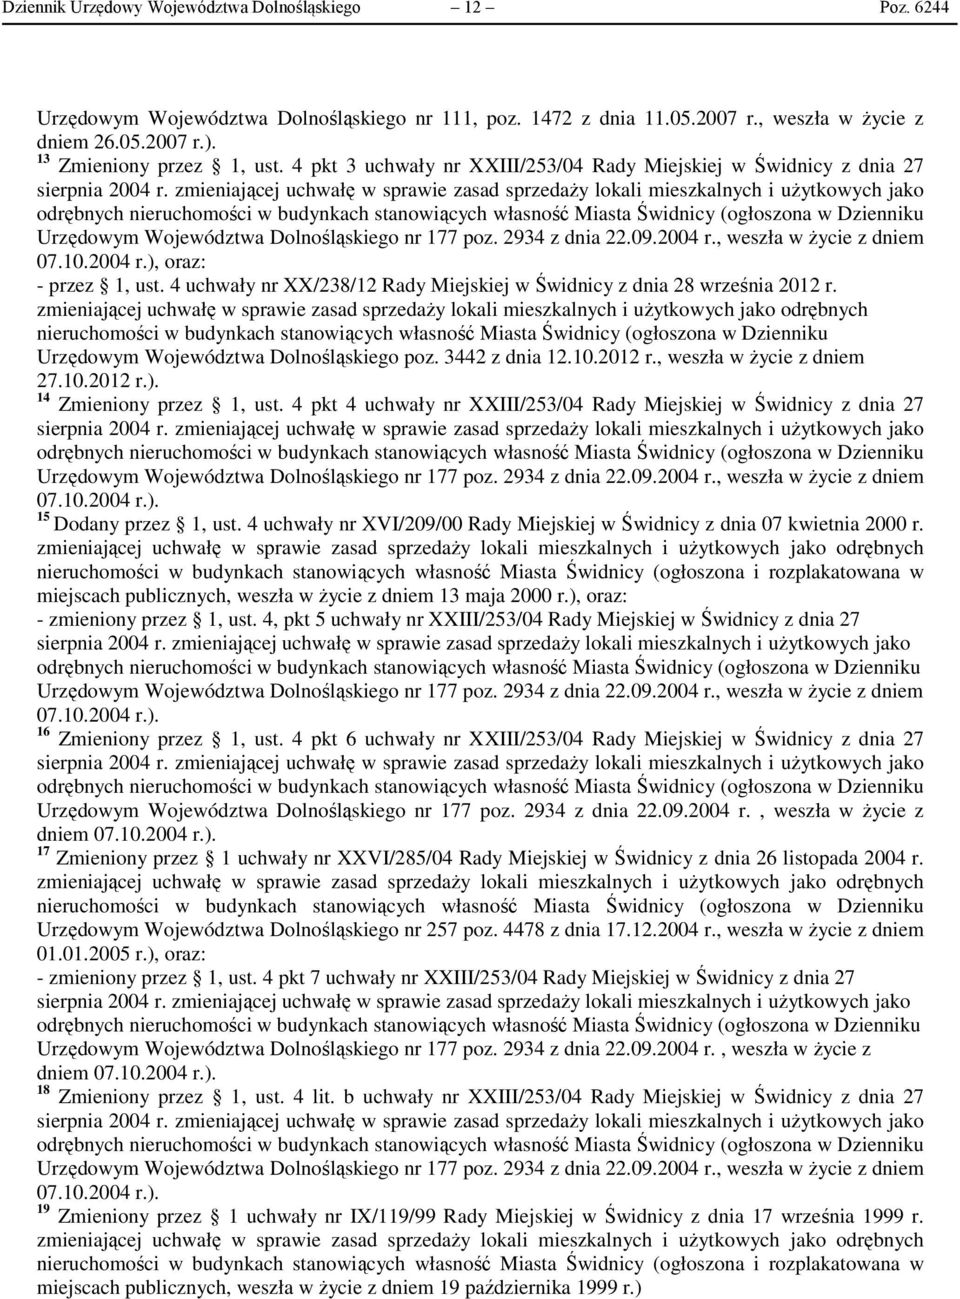 Urzędowym Województwa Dolnośląskiego poz. 3442 z dnia 12.10.2012 r., weszła w życie z dniem 27.10.2012 r.). 14 Zmieniony przez 1, ust.